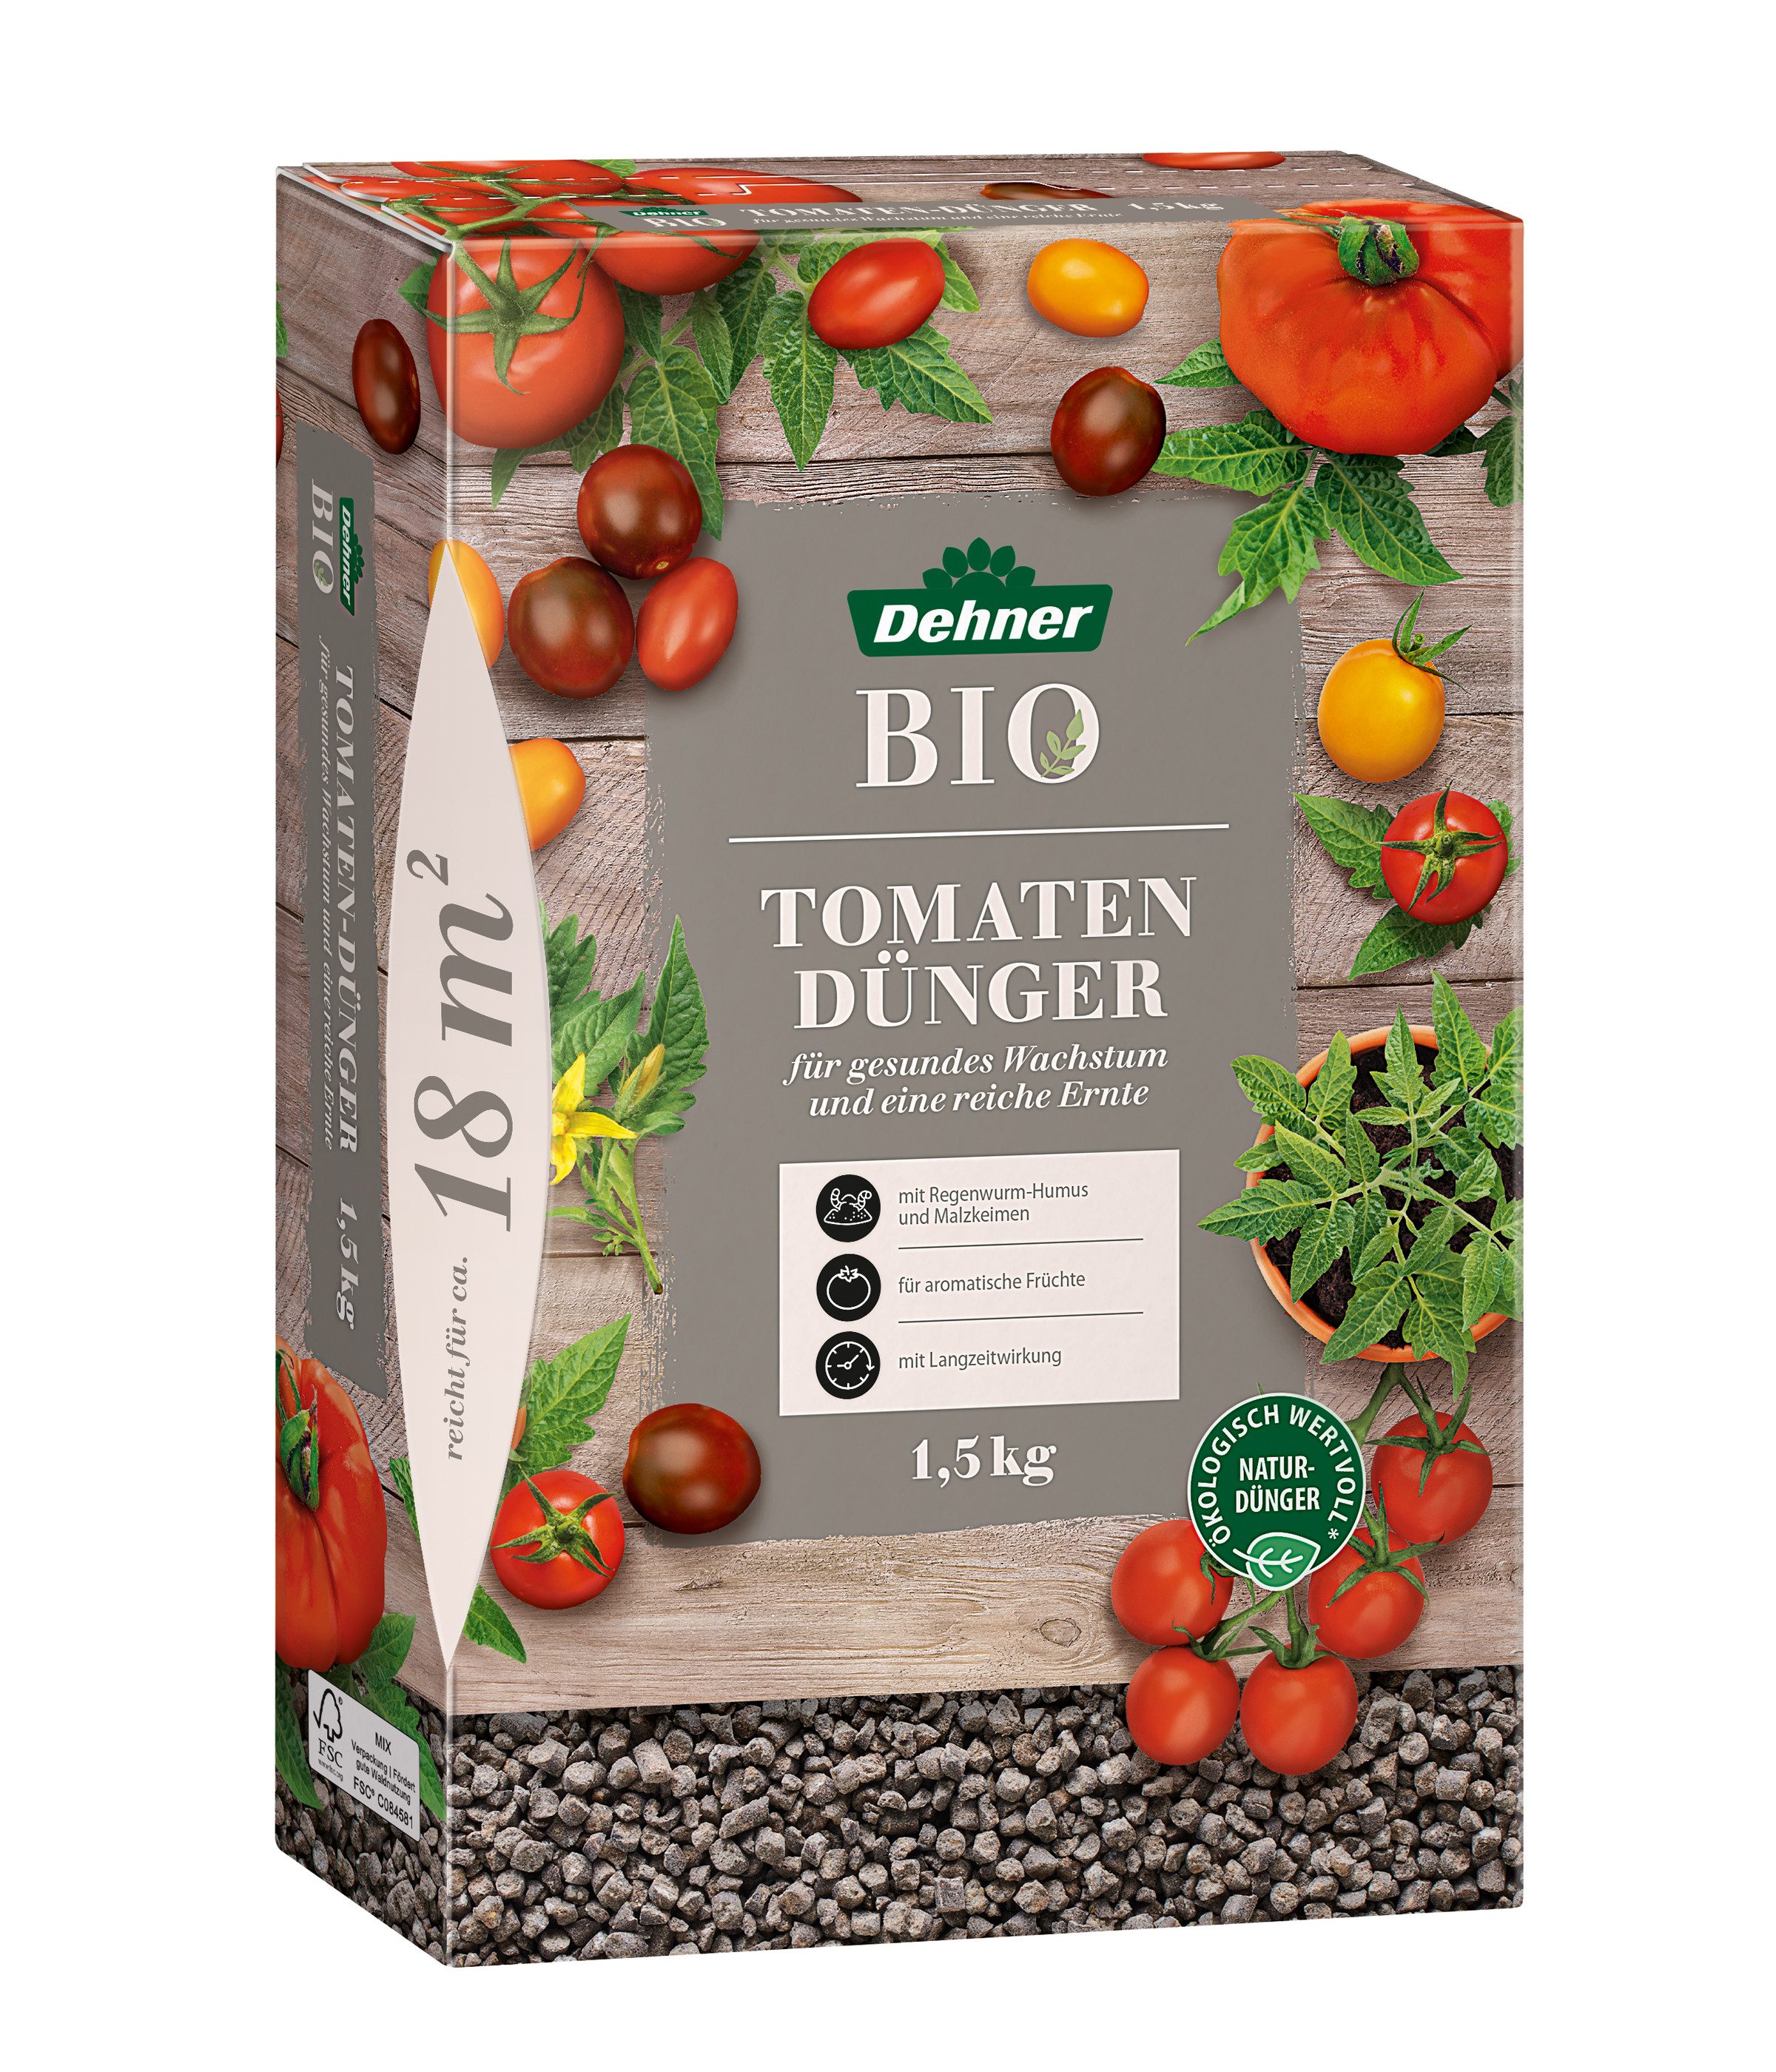 Dehner Gartendünger Bio Tomatendünger, hochwertiger NPK-Dünger, natürliche Langzeitwirkung, organisch mit Spurennährstoffen